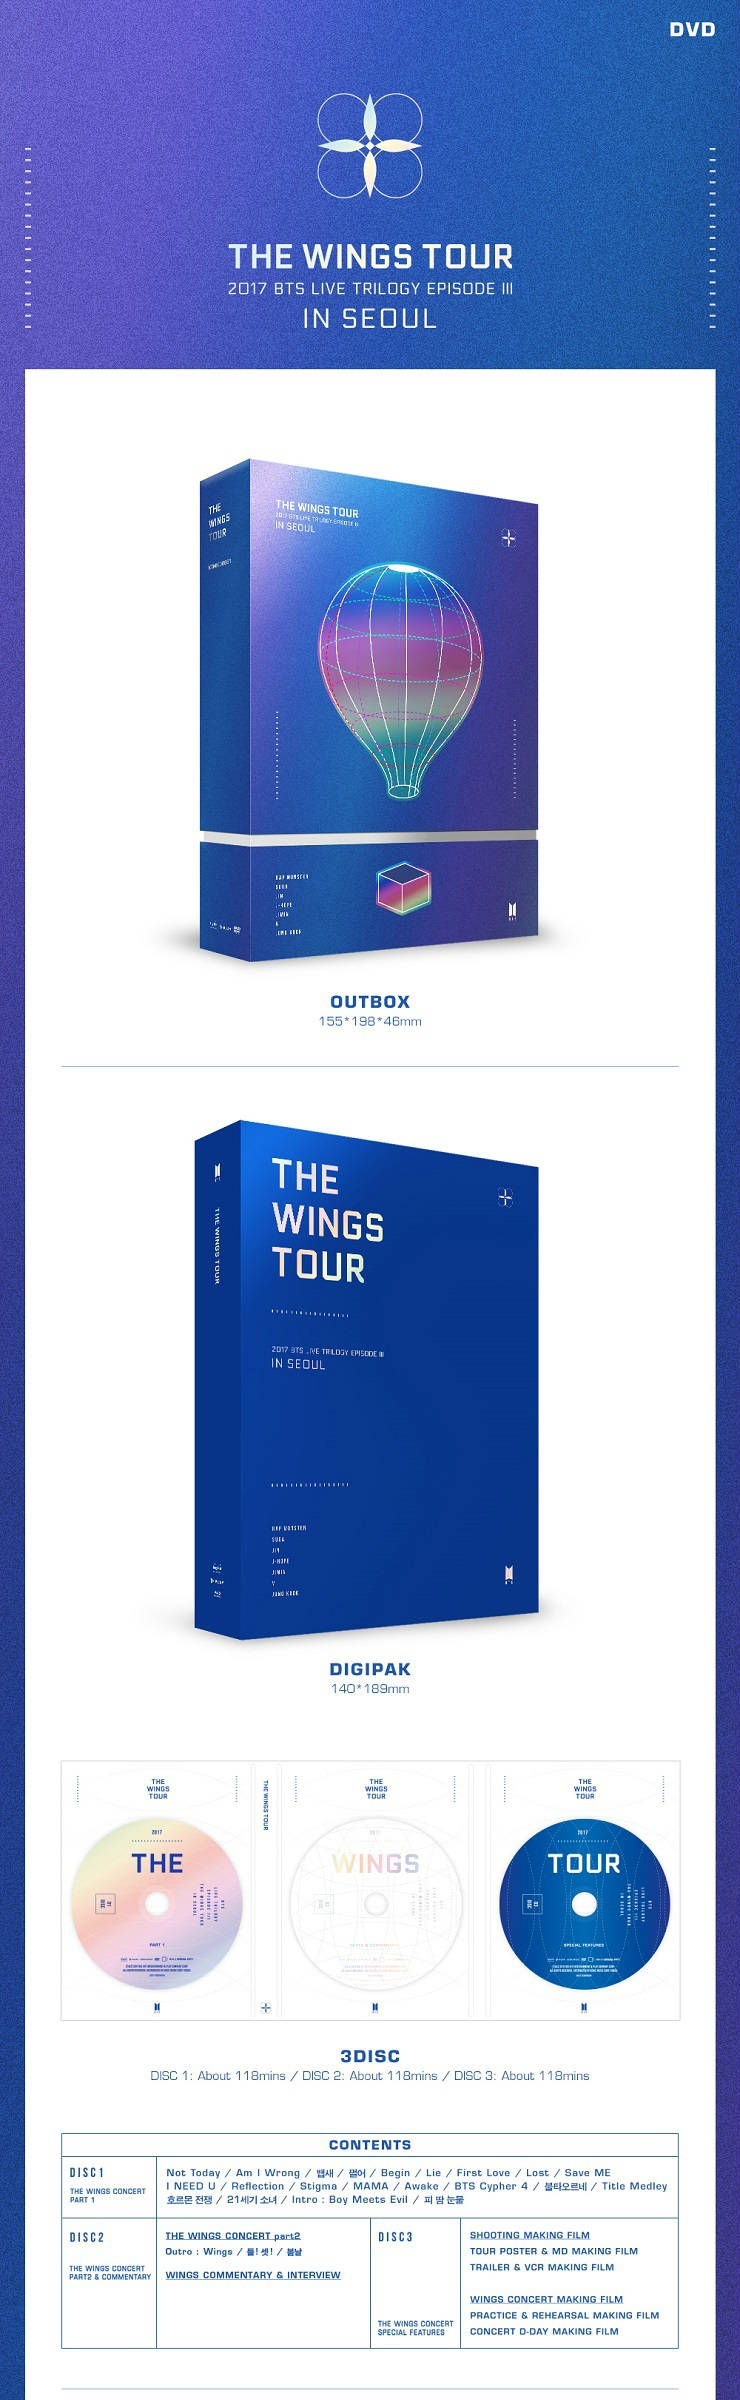 방탄소년단(BTS) - 2017 BTS Live Trilogy EPISODE III THE WINGS TOUR in Seoul CONCERT DVD